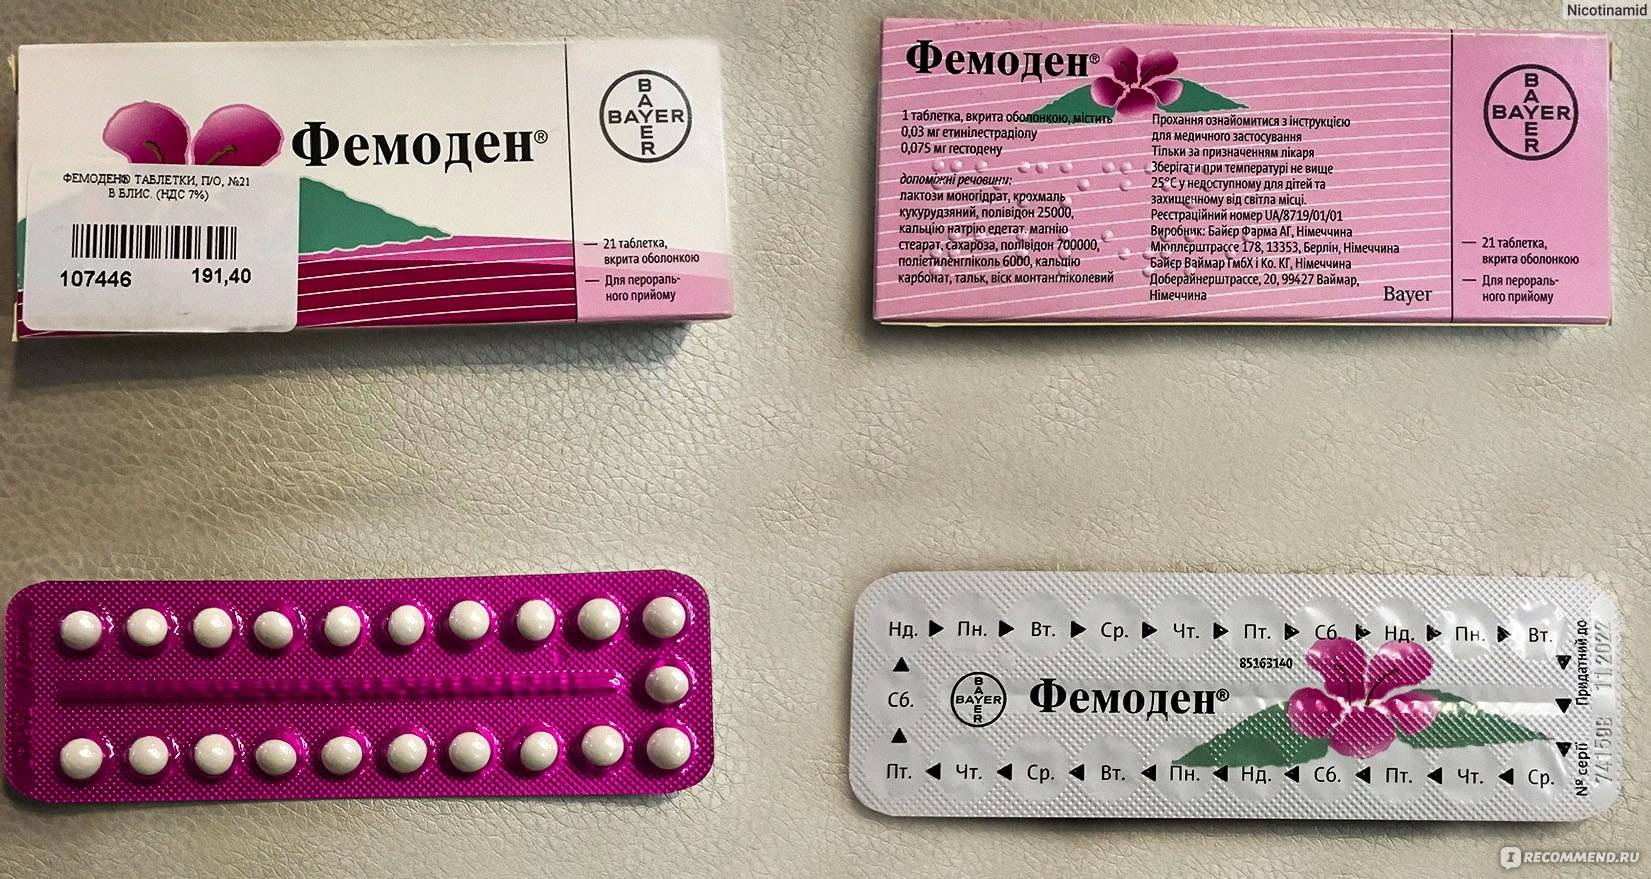 Противозачаточные таблетки: названия, цена, отзывы об оральных контрацептивах для женщин, побочные эффекты - medside.ru